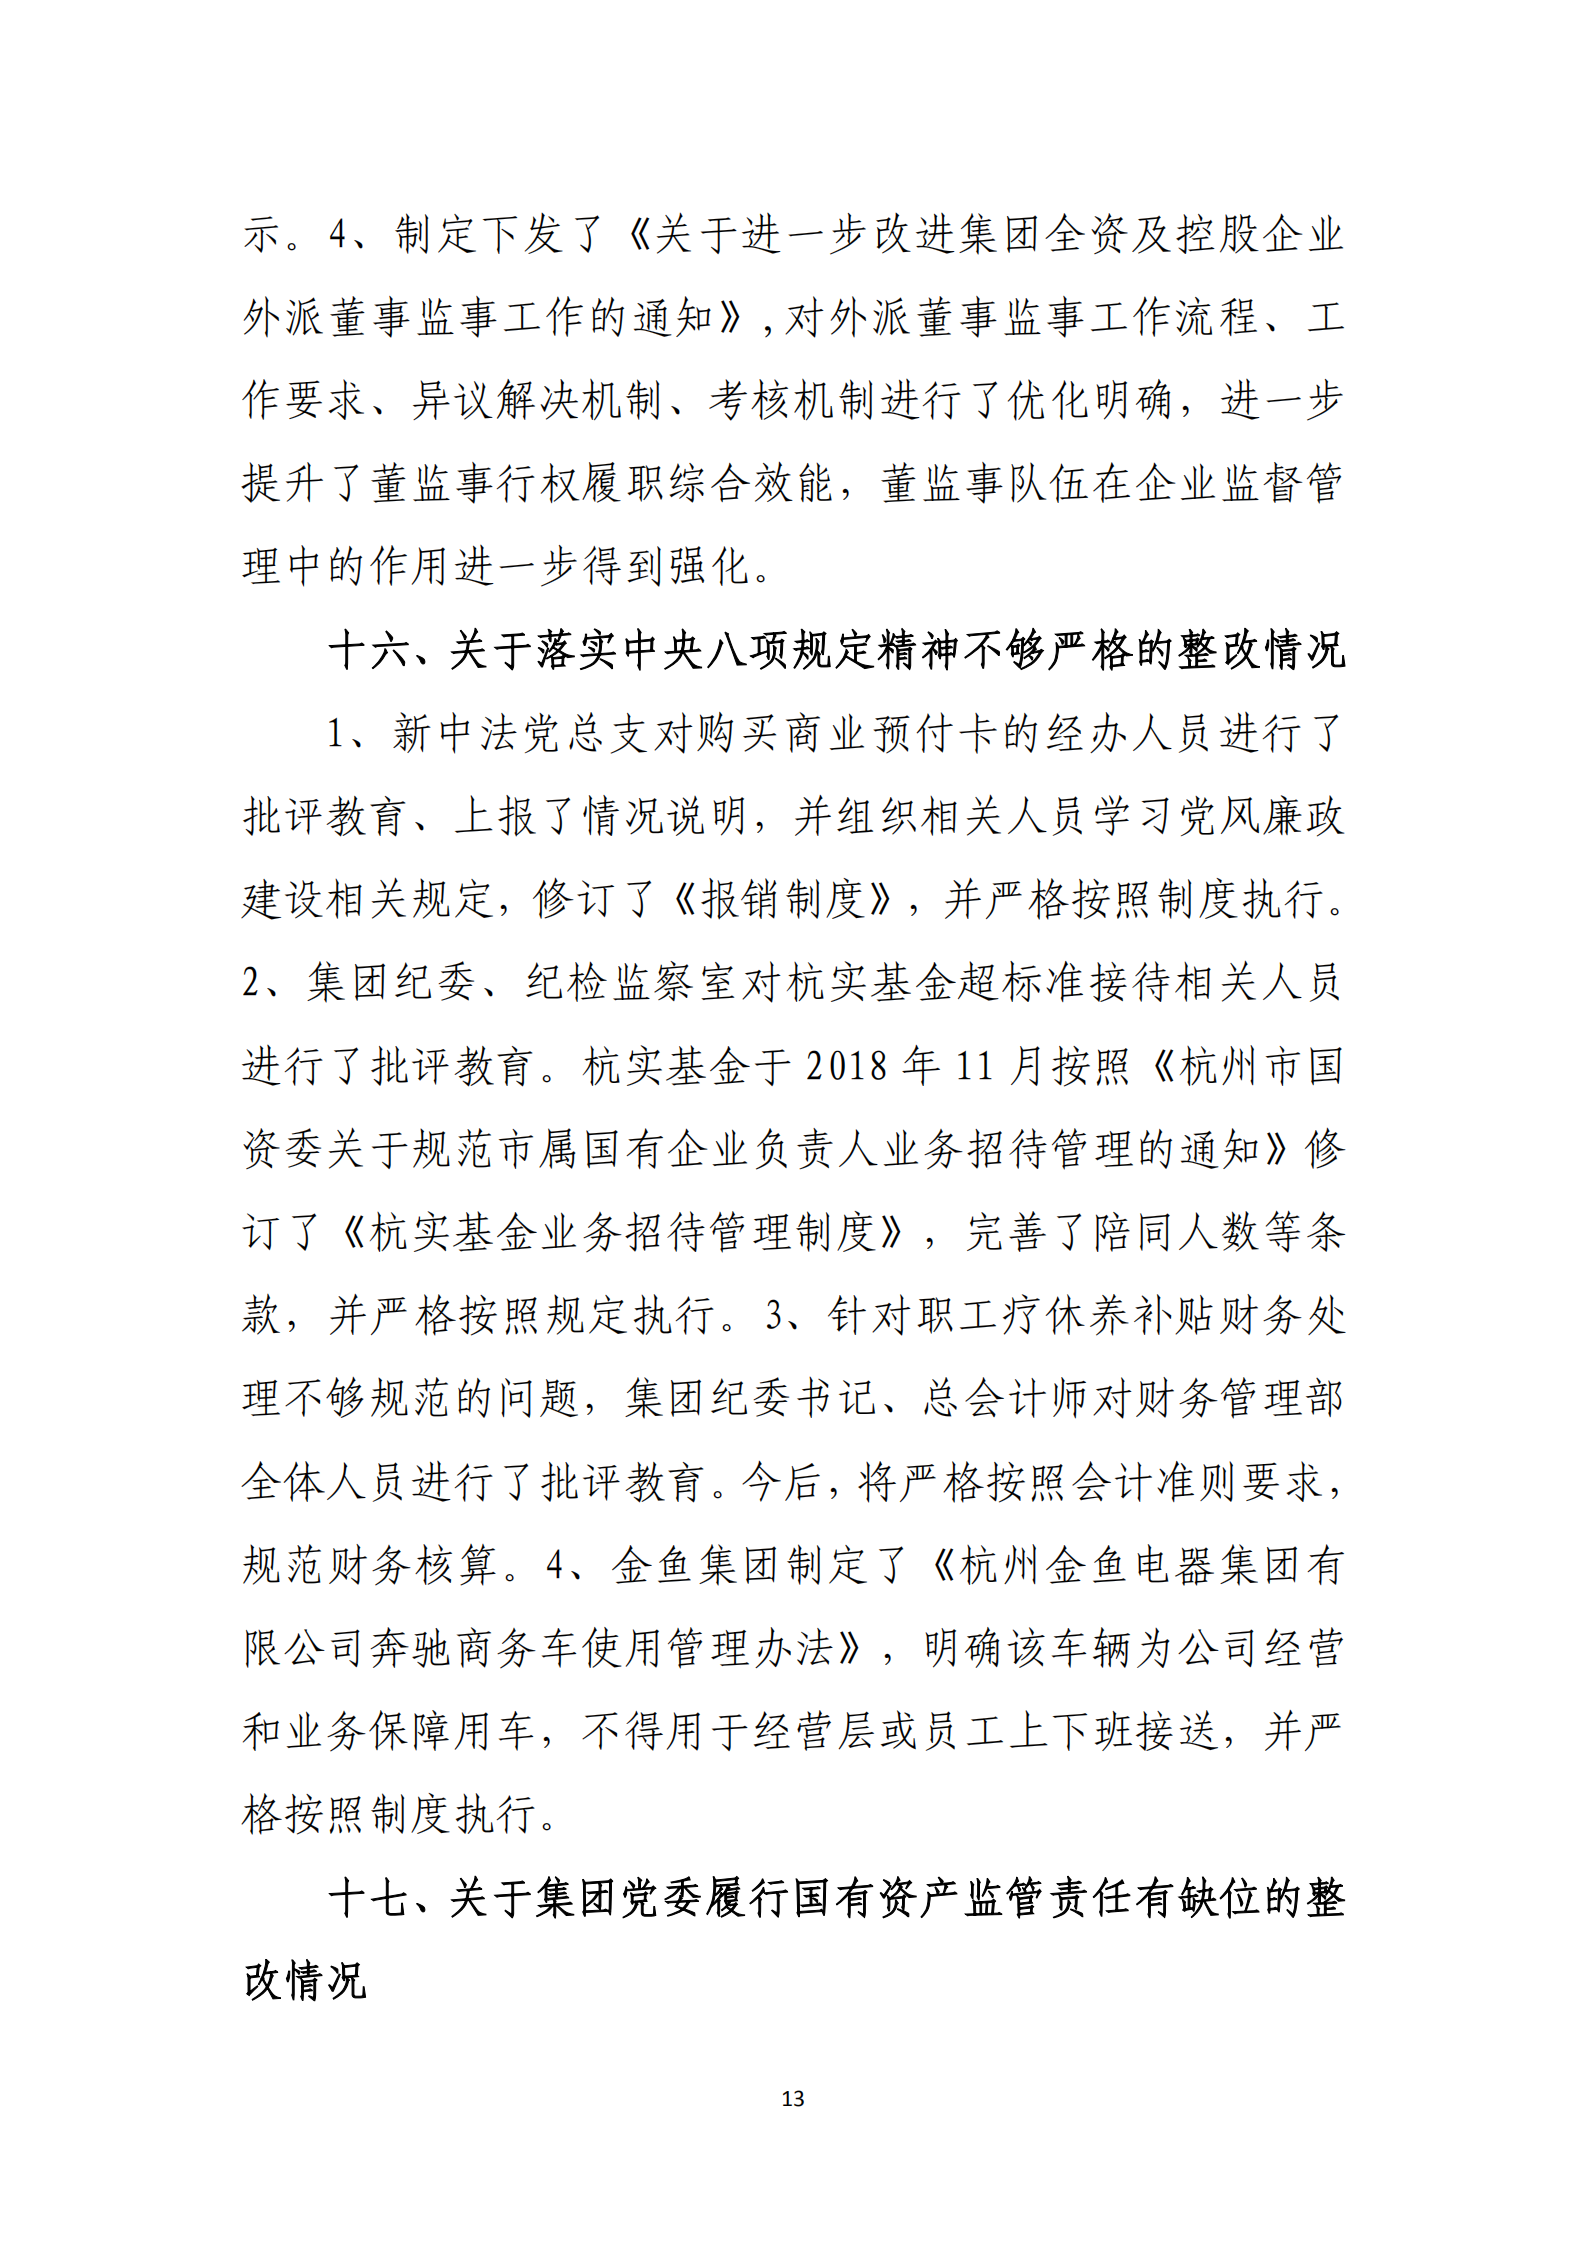 杭实集团党委关于巡察整改情况的通报_12.png